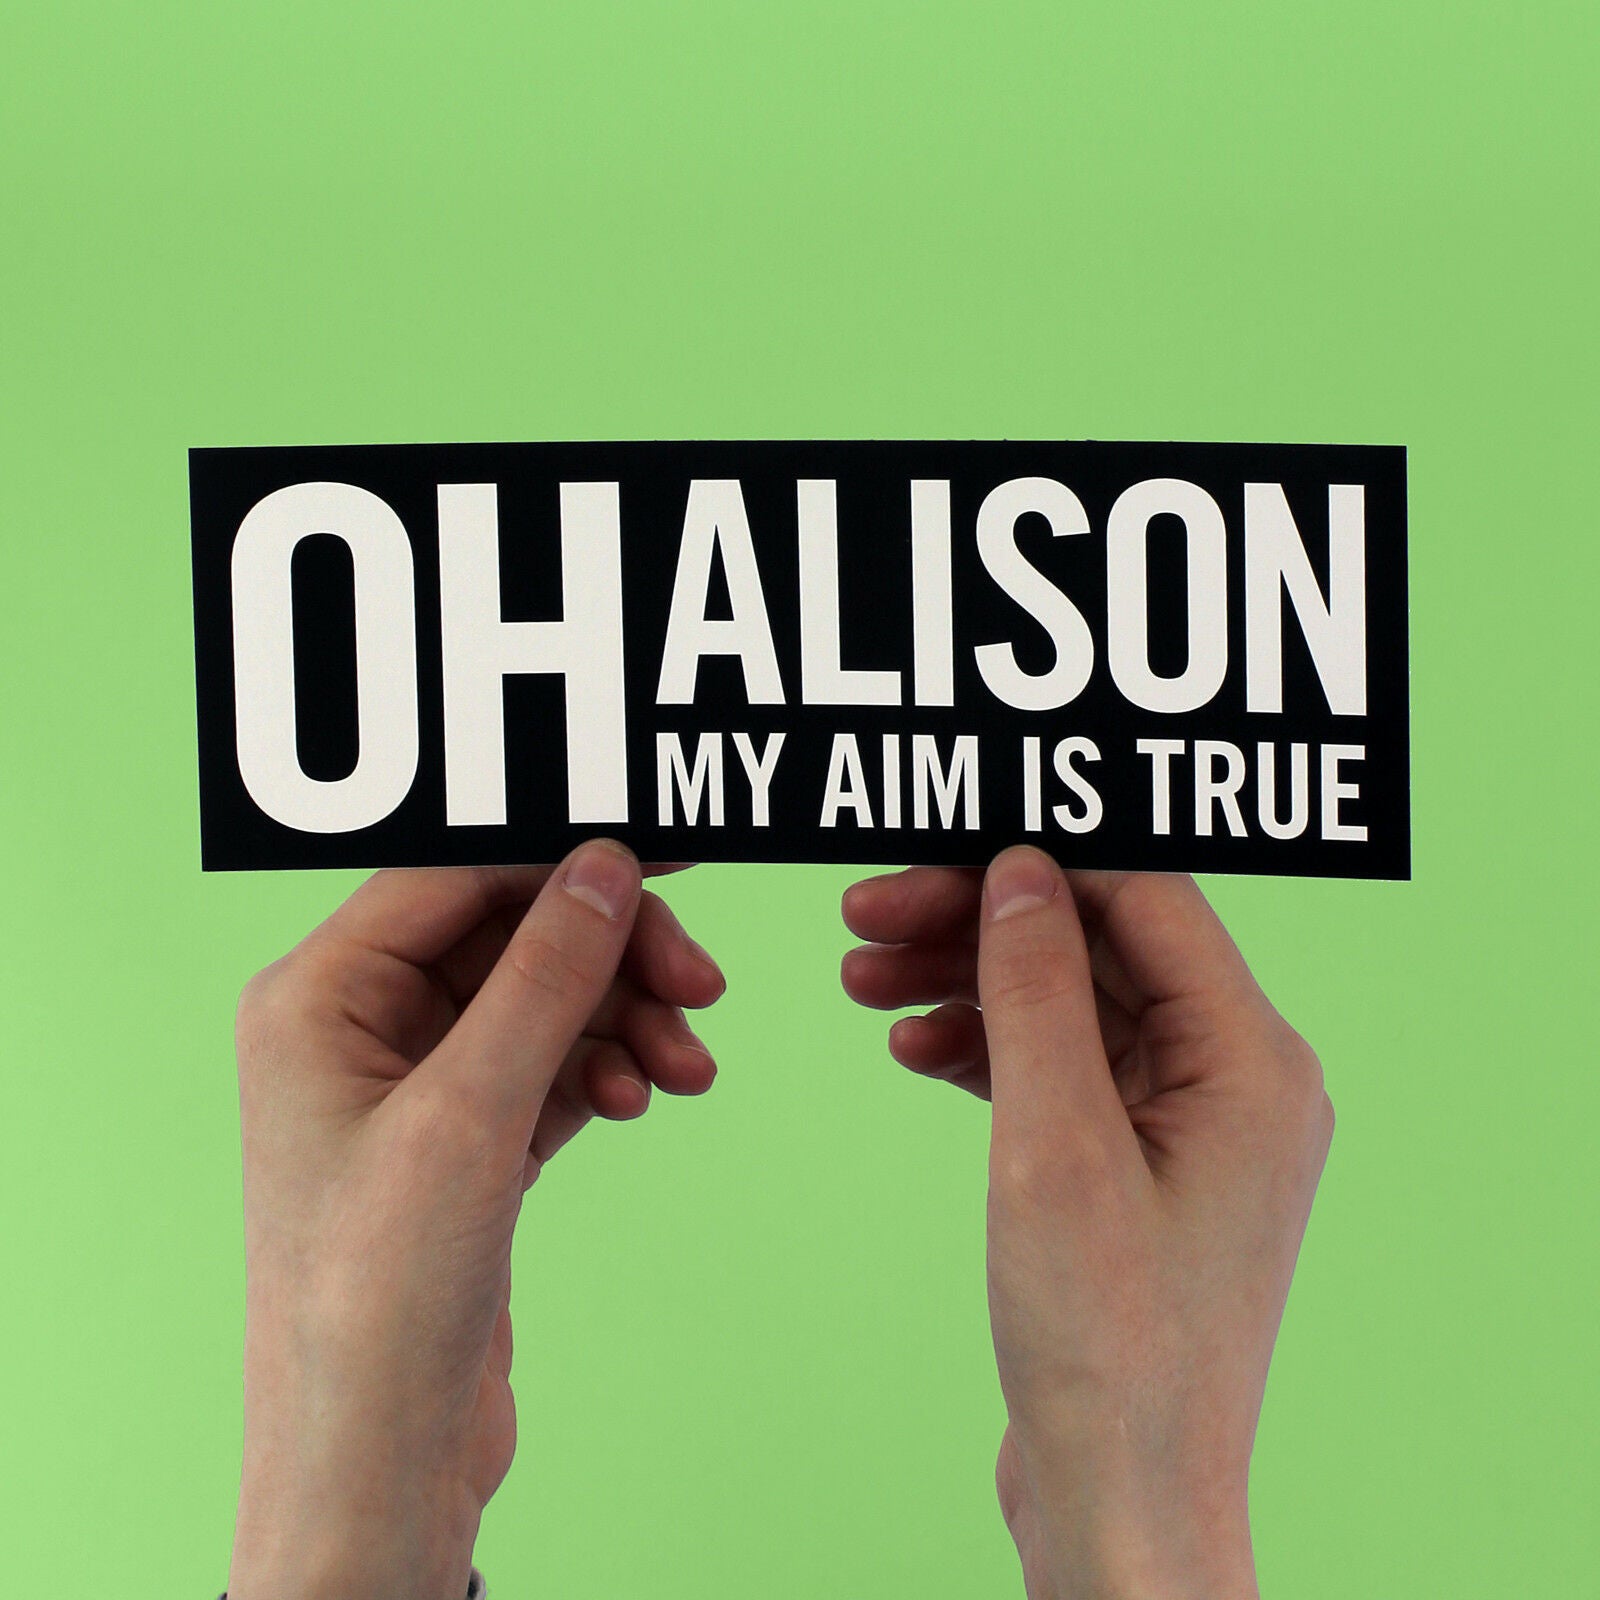 Elvis Costello  "Oh Alison my aim is true" Lyric Bumper Sticker